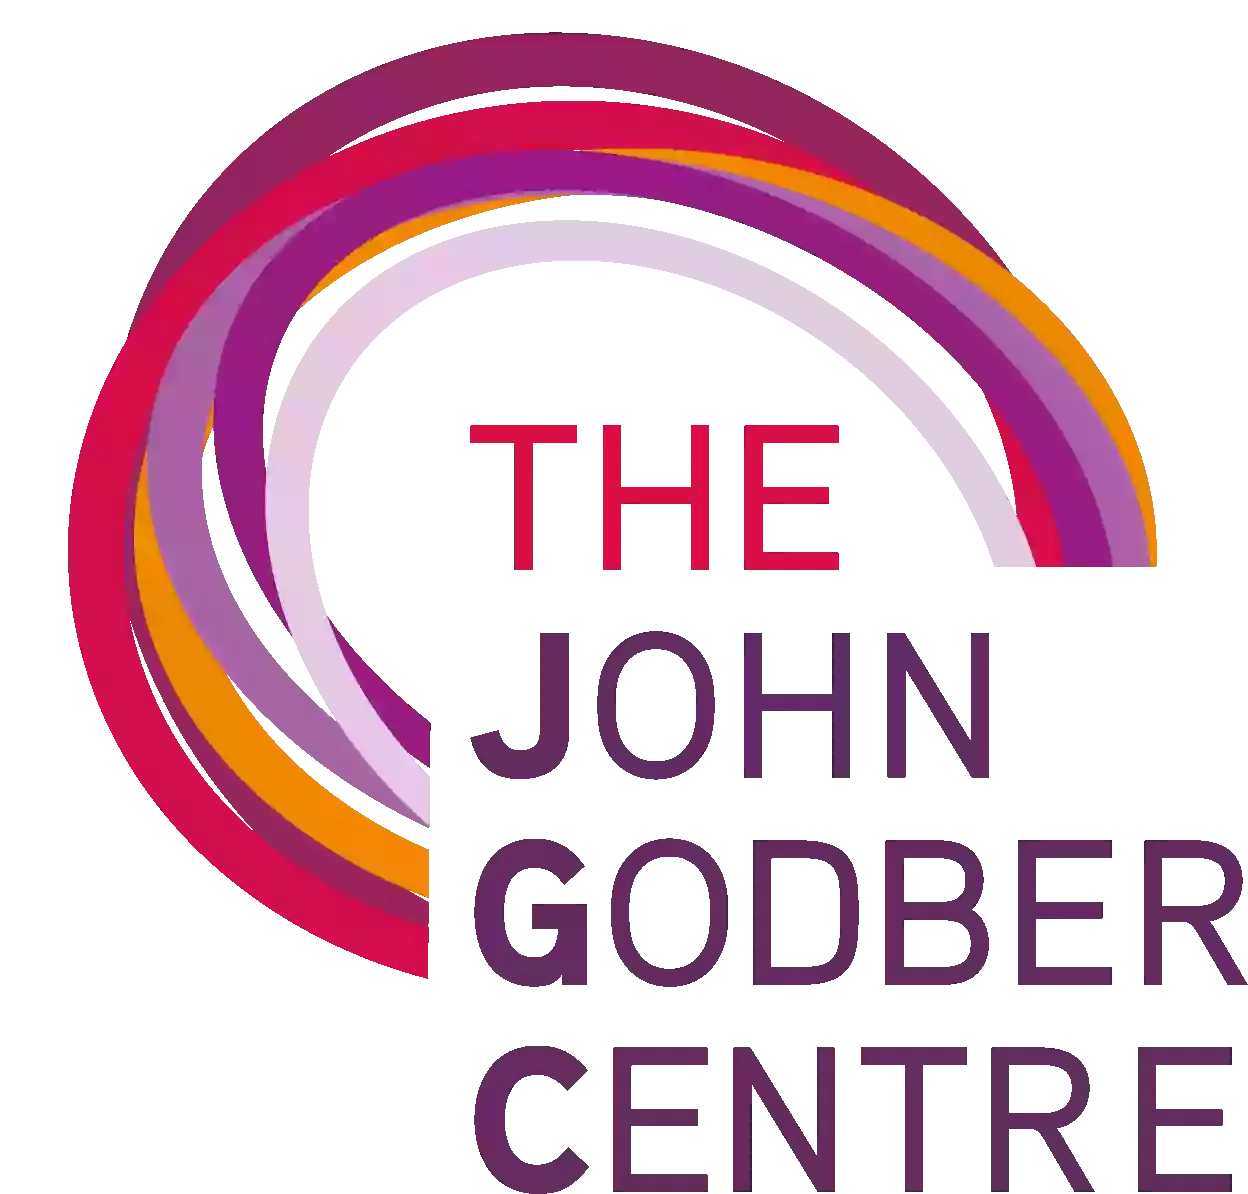 The John Godber Centre